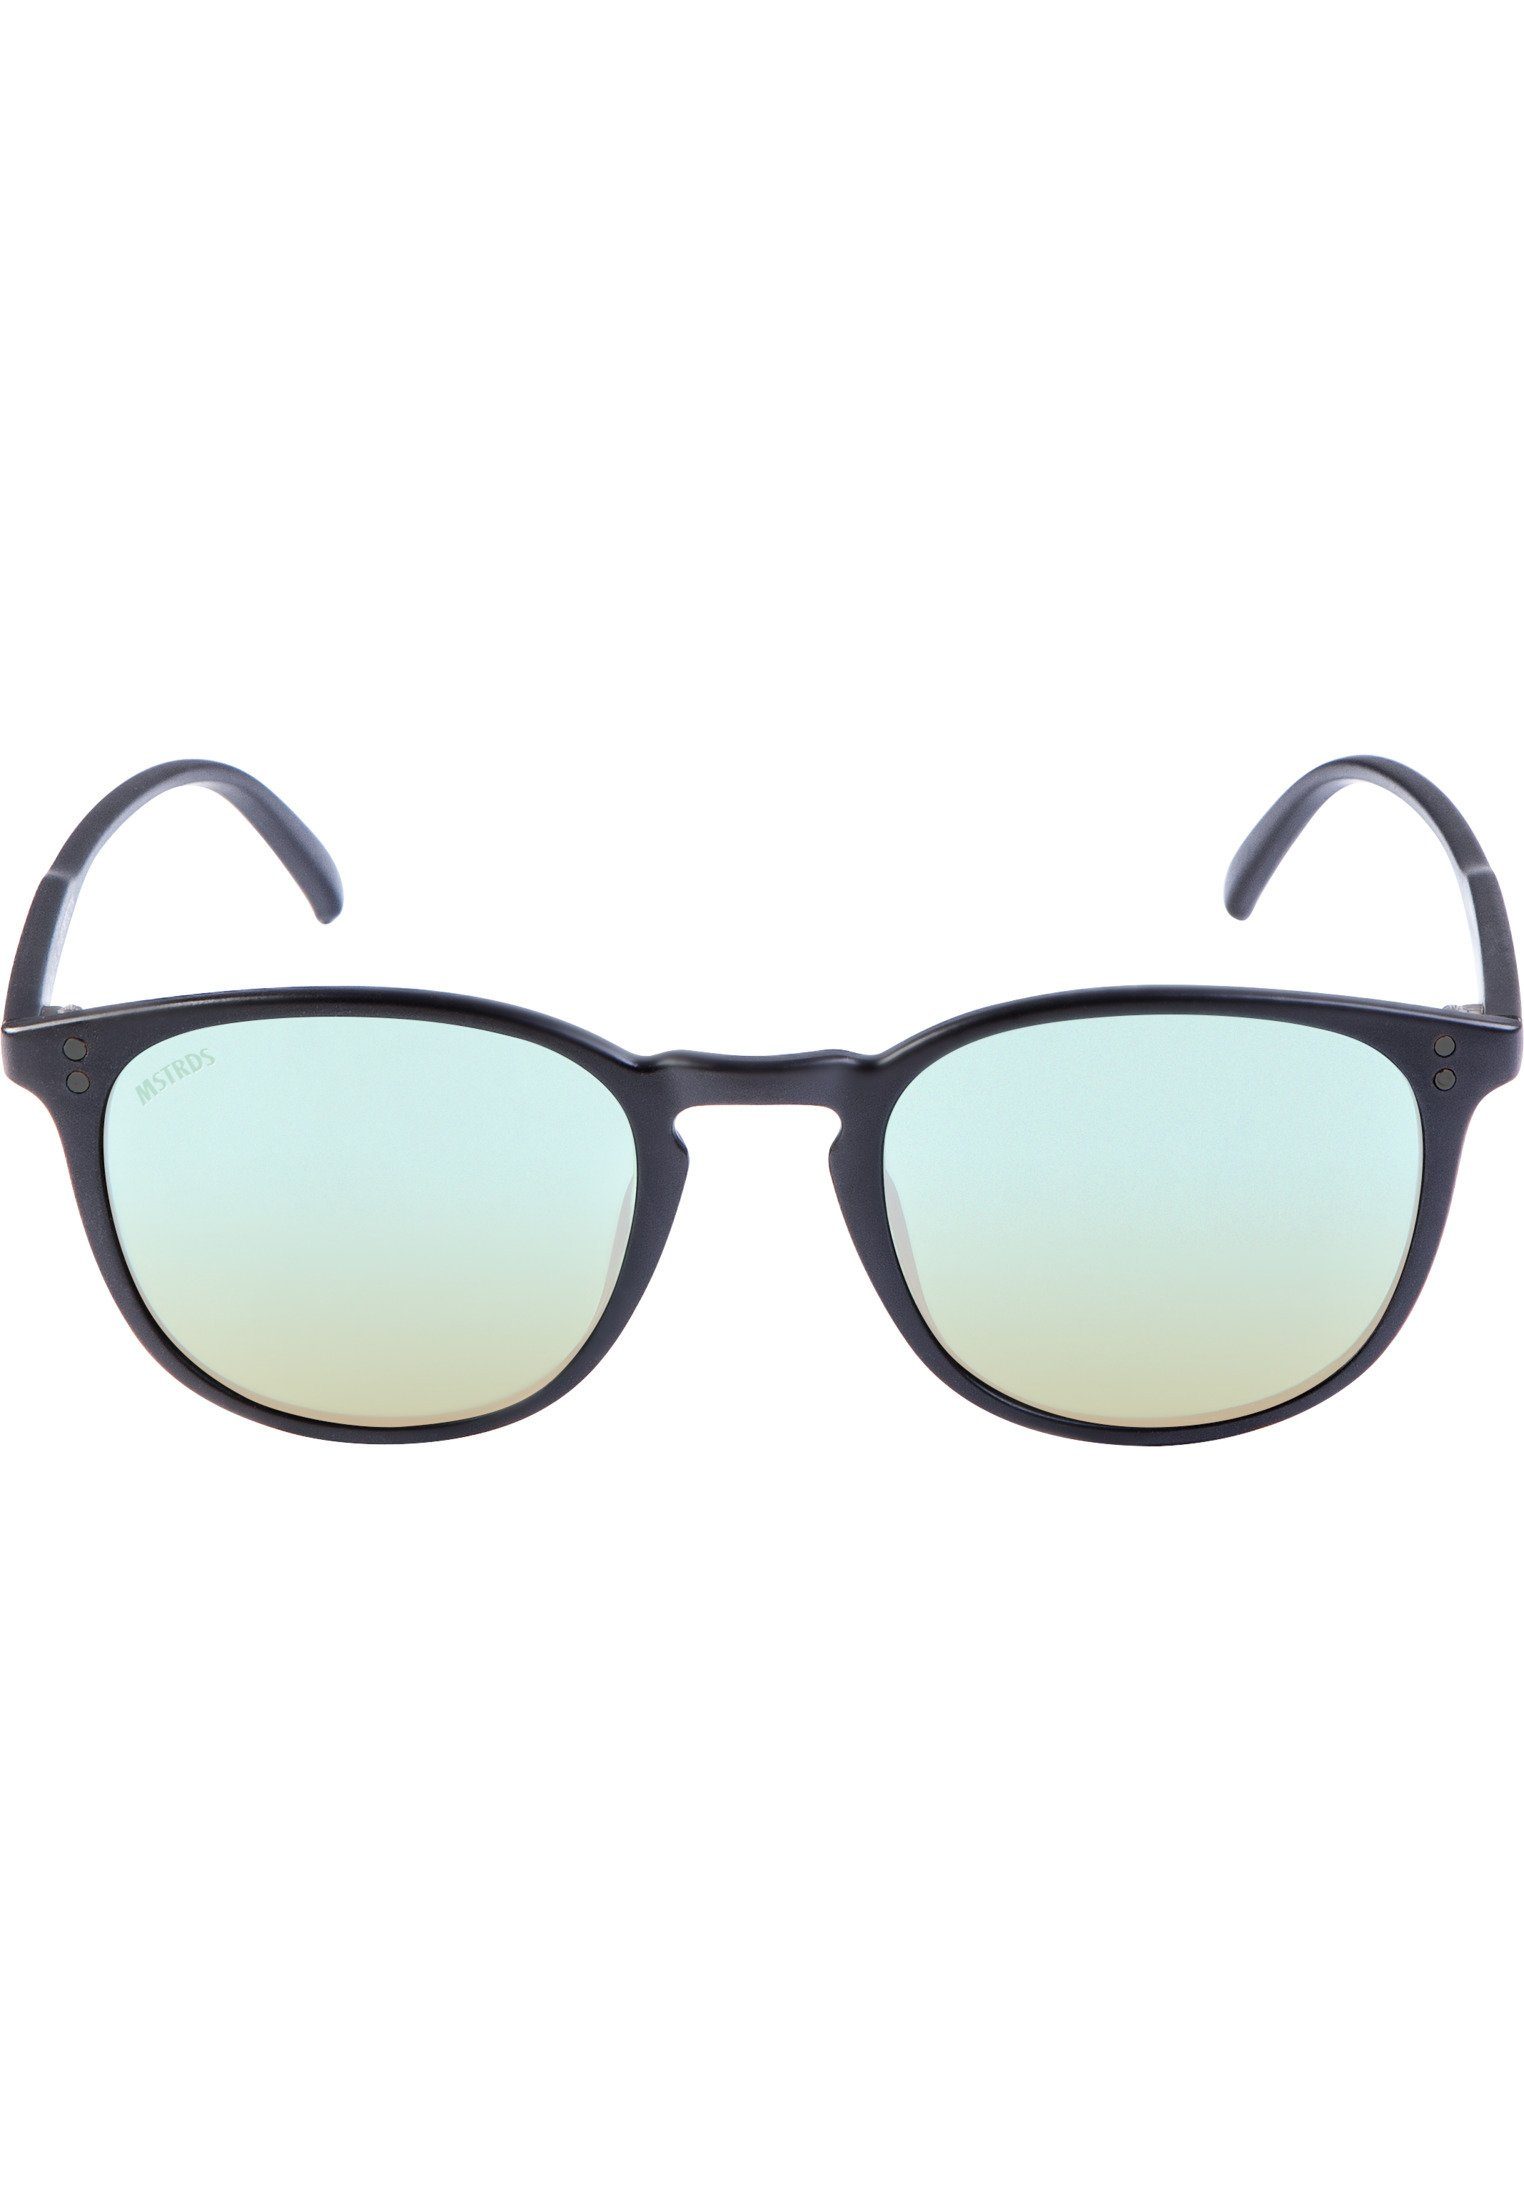 blk/blue Sunglasses Accessoires Sonnenbrille MSTRDS Arthur